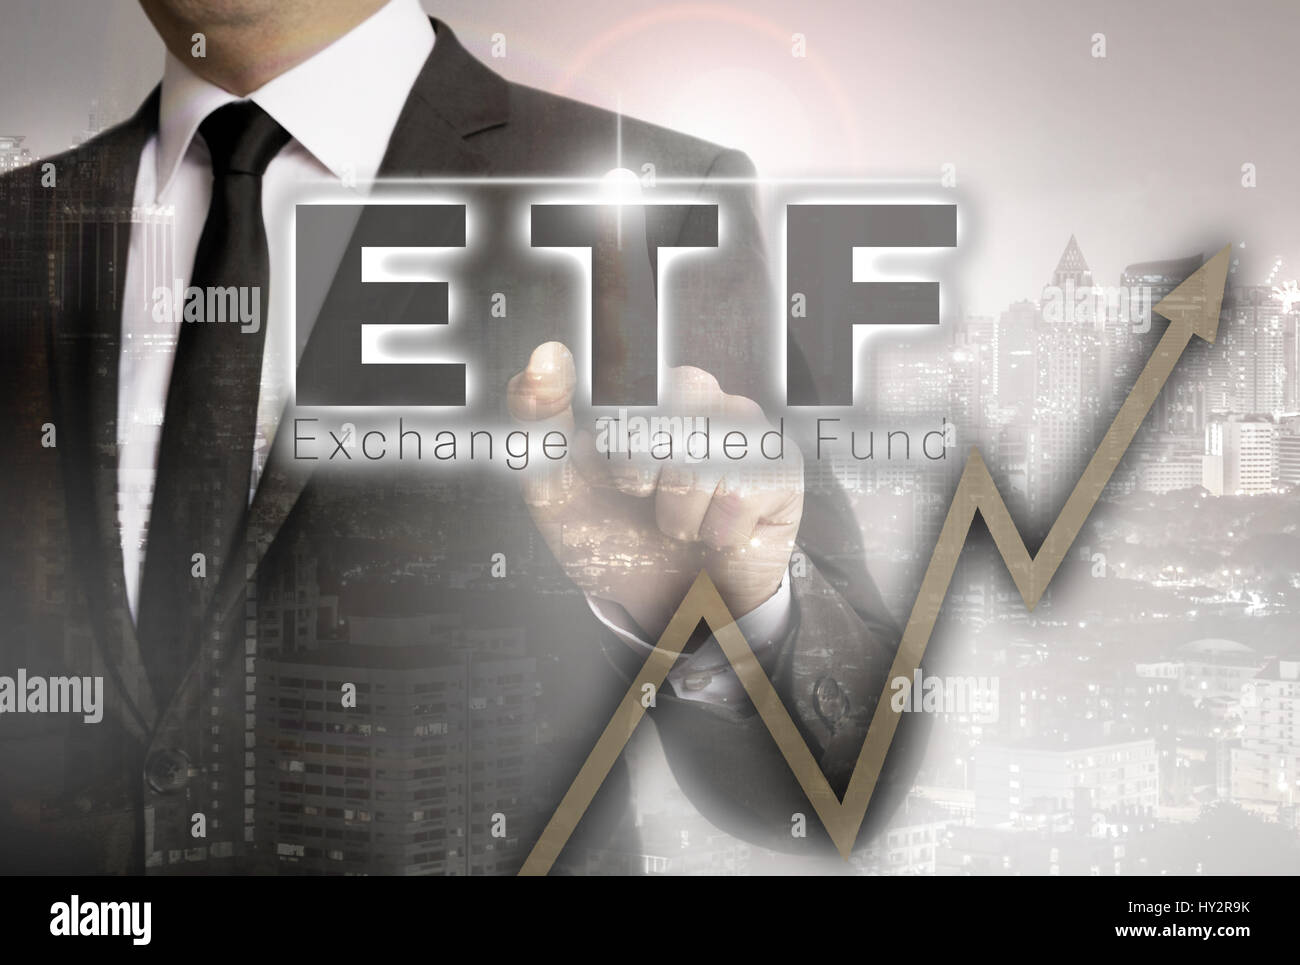 Etf ist von Geschäftsmann Konzept gezeigt. Stockfoto